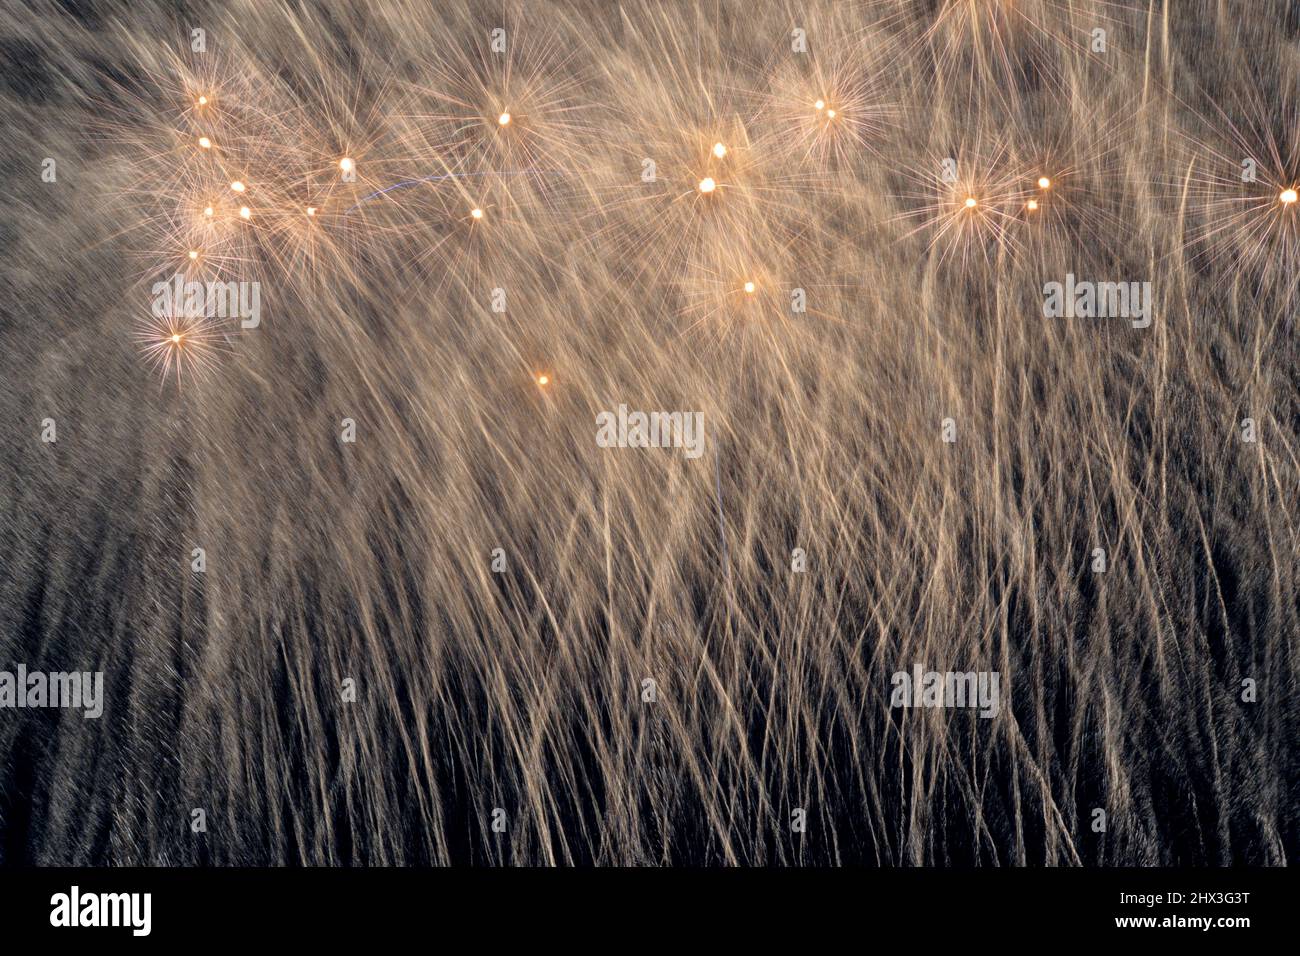 Explosives Feuerwerk mit Funkenregen.Feuerwerk während eines Festes in Sizilien im Mittelmeer. Schönes helles Feuerwerk, das die n erleuchtet Stockfoto